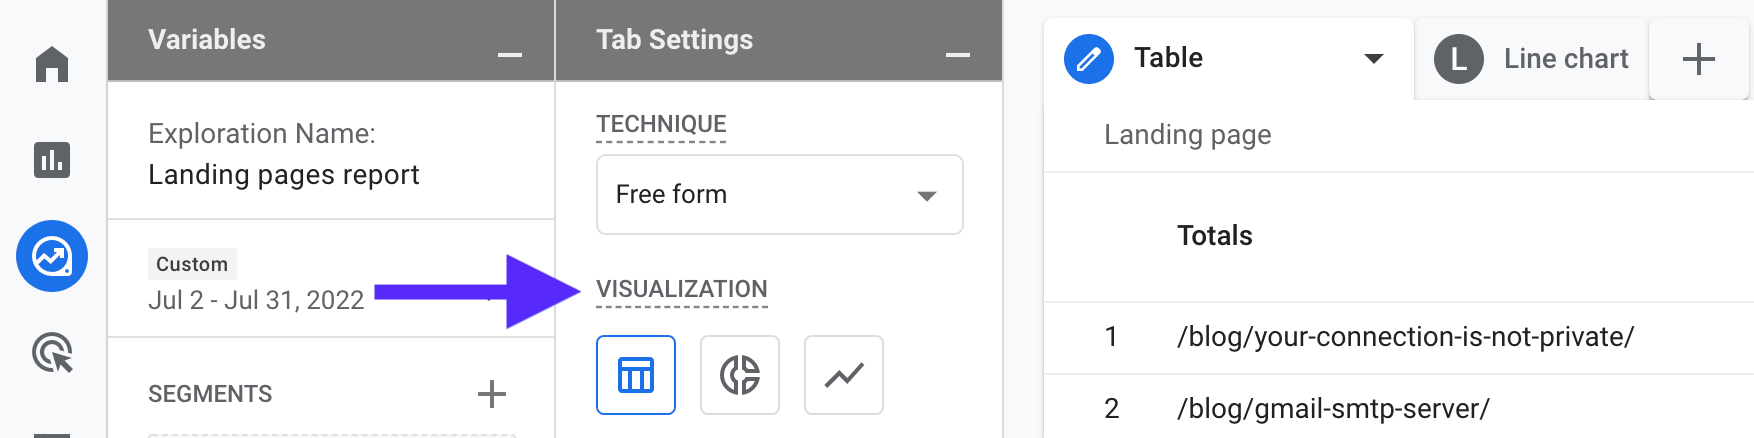 GA4 screenshot showing visualization settings